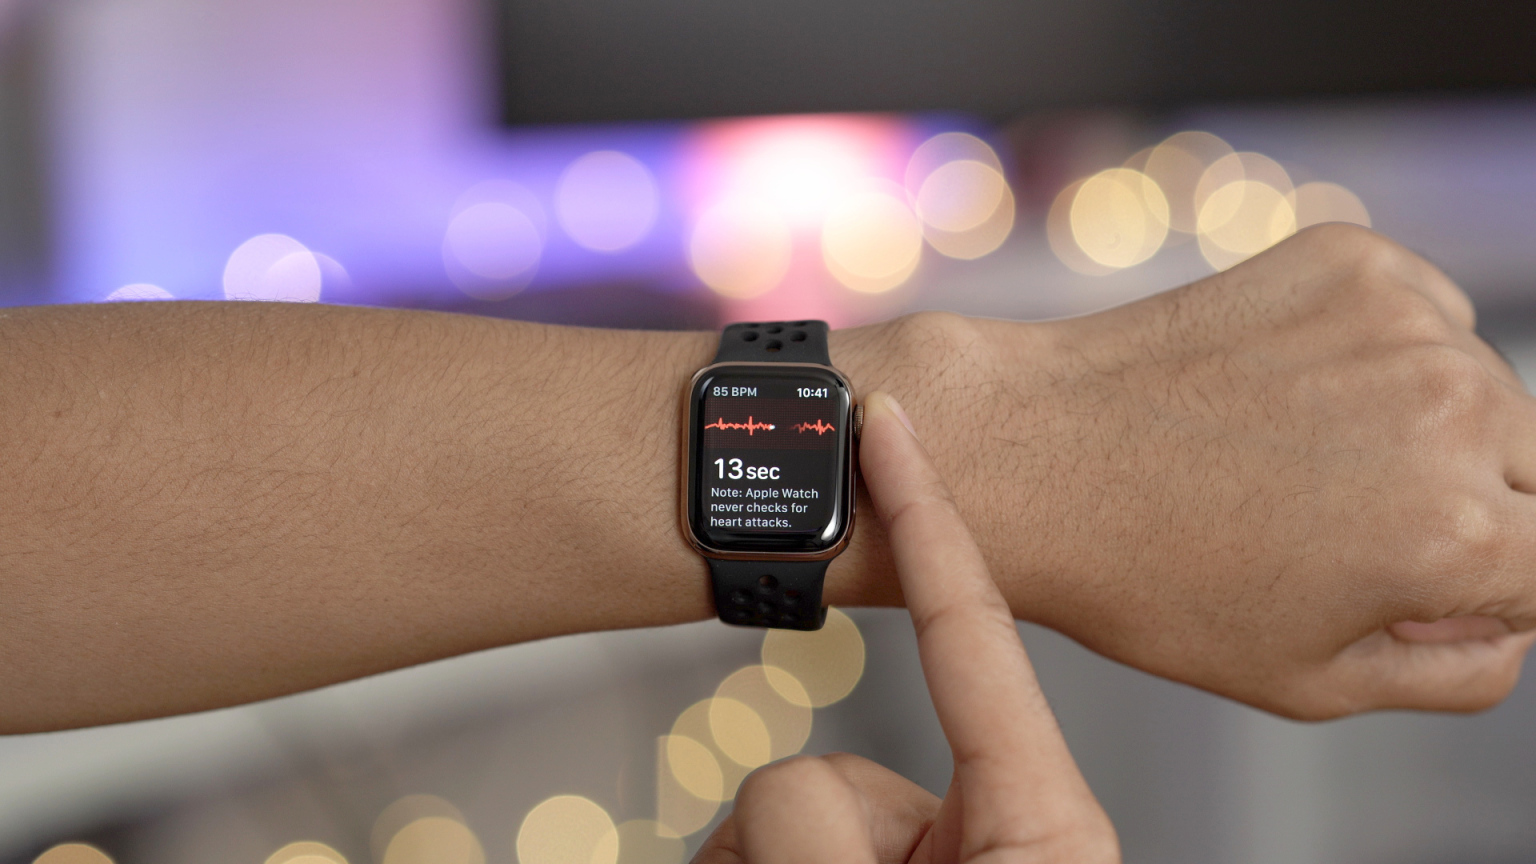 Apple-Watch-ECG-App-watchOS-5.1.2-Whats-New1